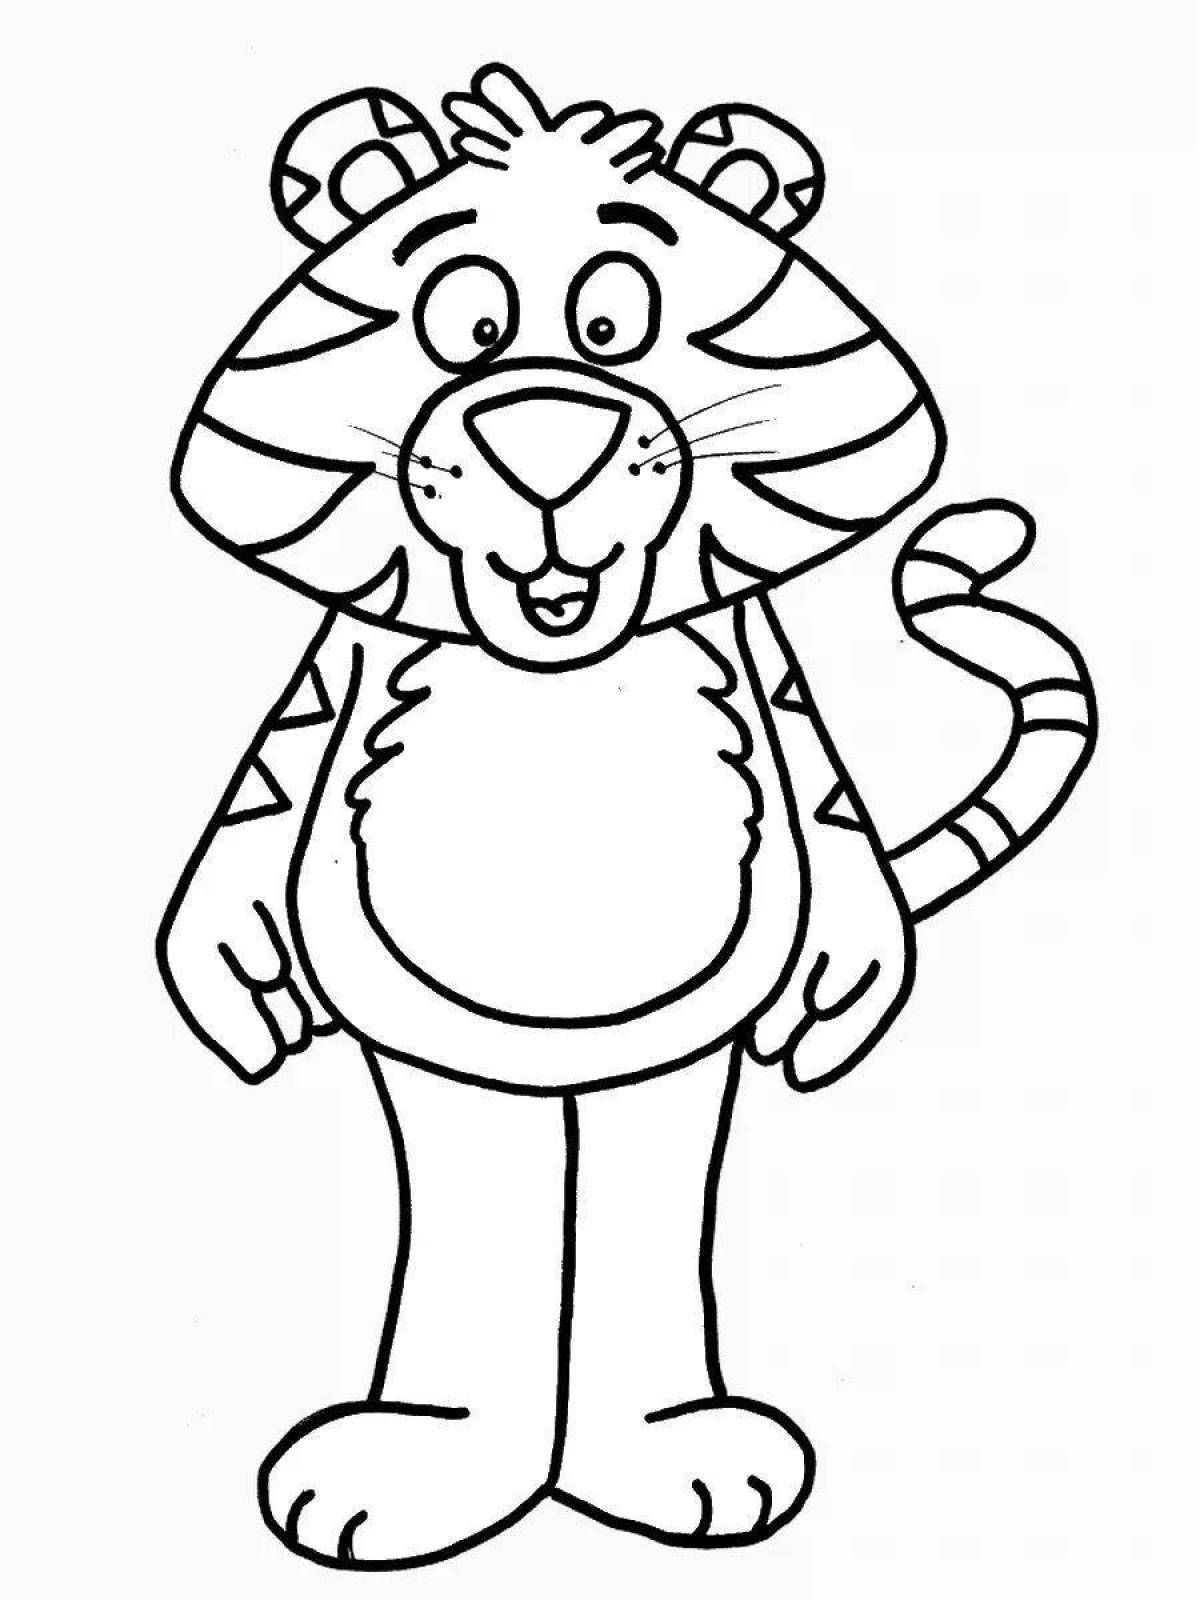 Увлекательная раскраска тигра для детей